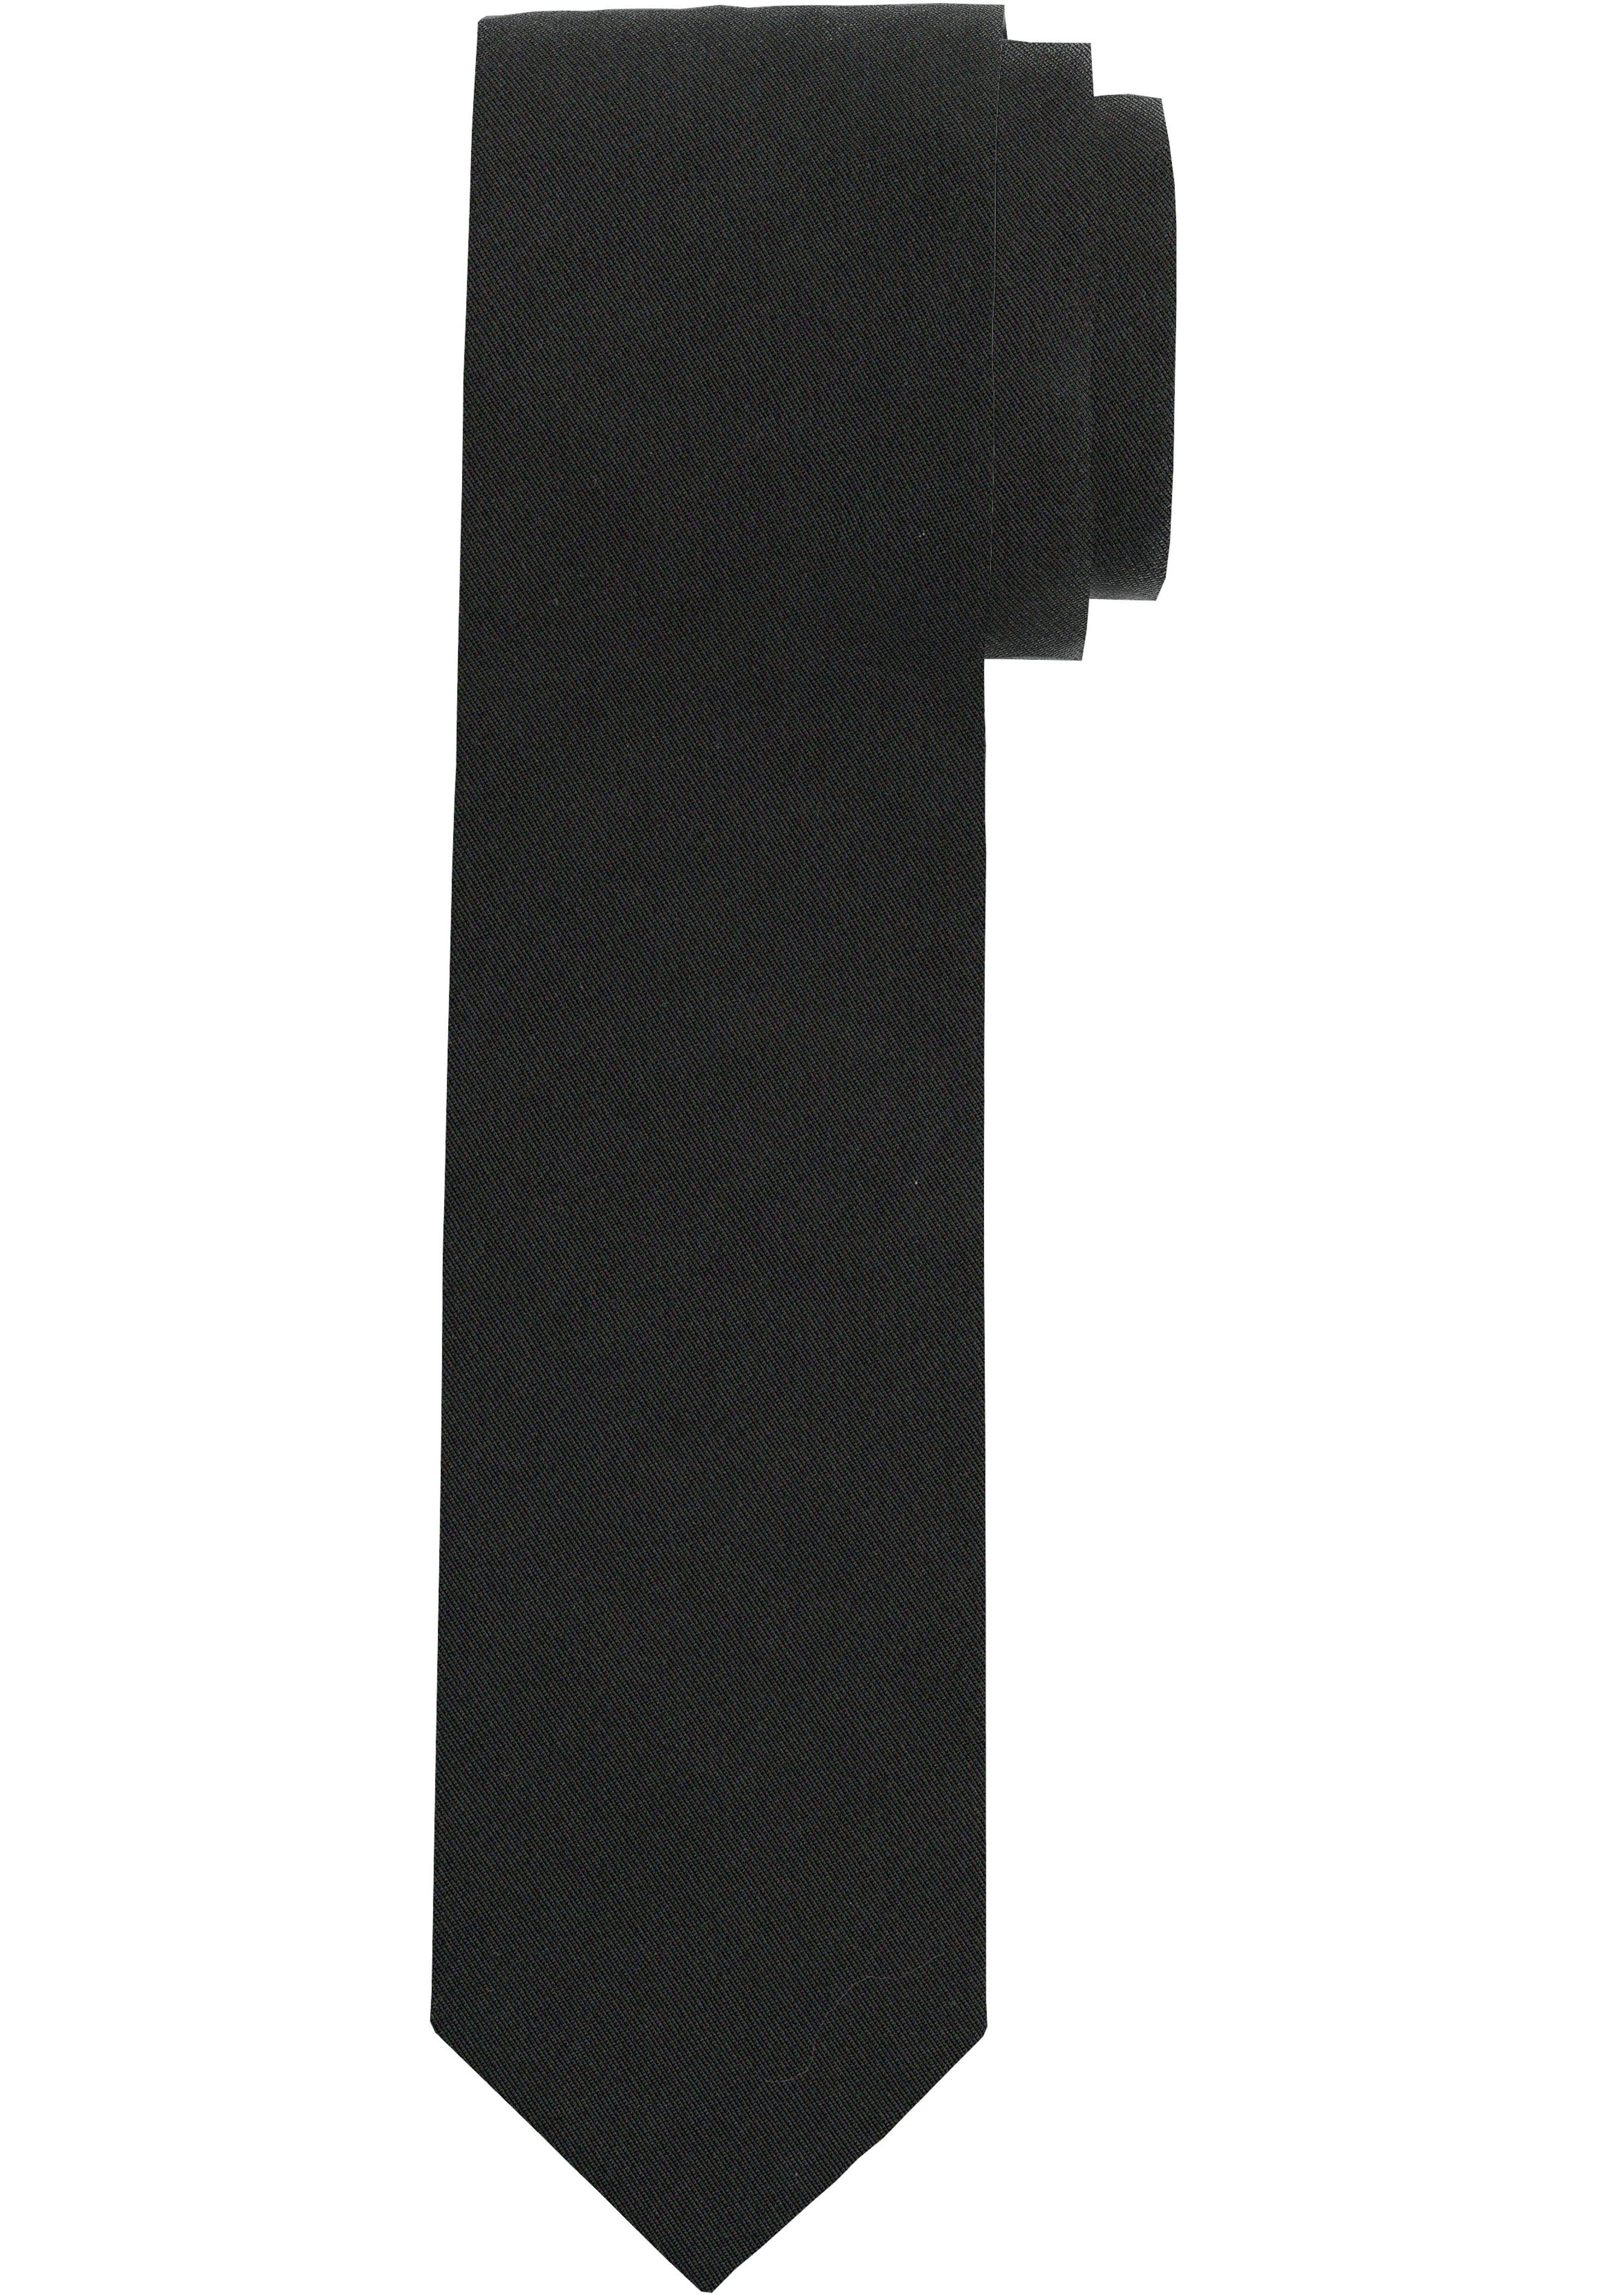 Seidenkrawatte Krawatte schwarz OLYMP